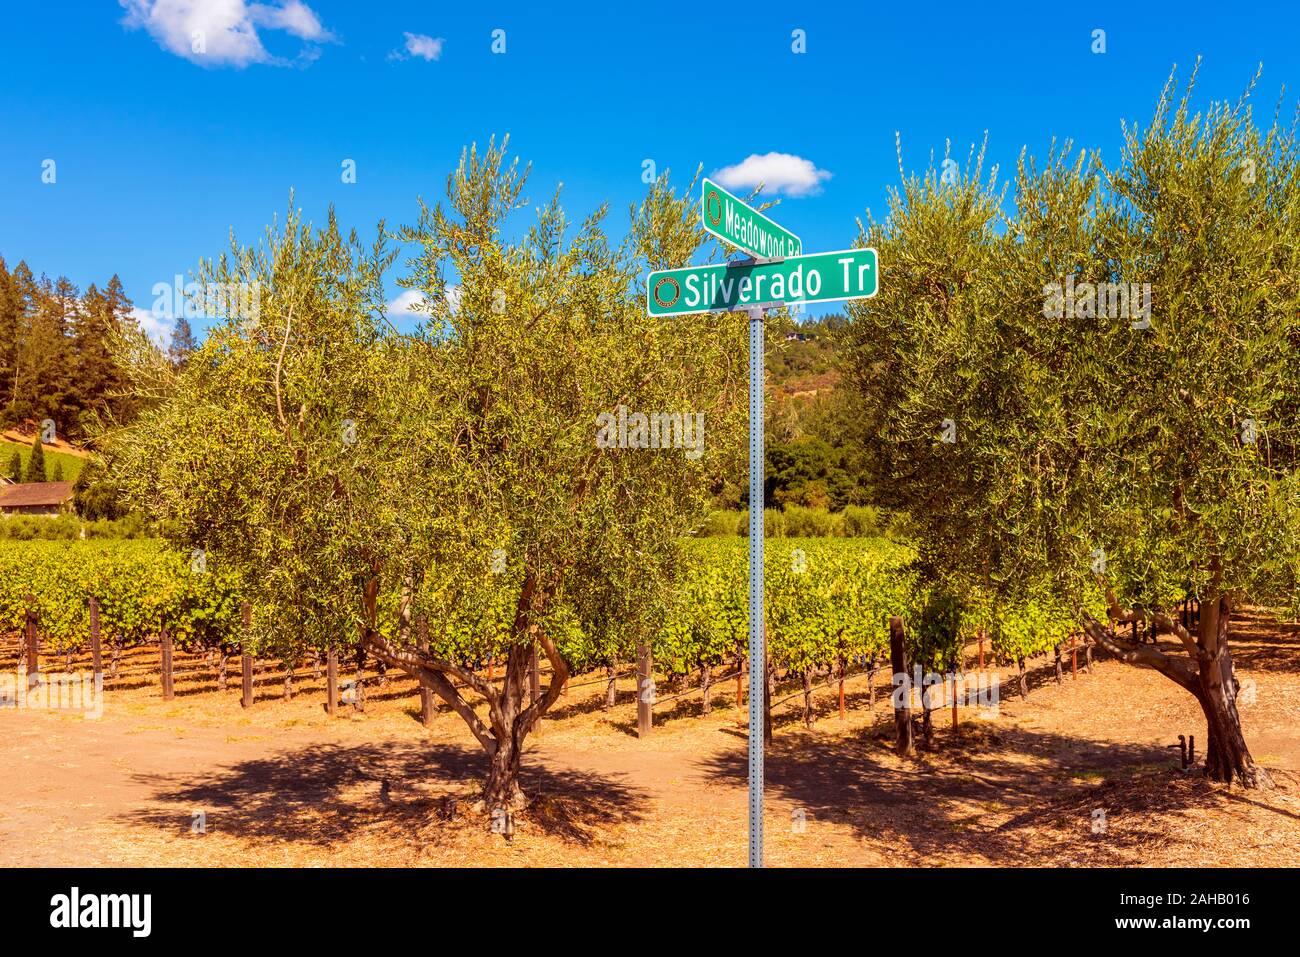 Silverado Trail cartello stradale nella Napa Valley, California, Stati Uniti d'America. È la strada principale lungo la quale molte cantine e vigneti nella Napa Valley si trova. Foto Stock